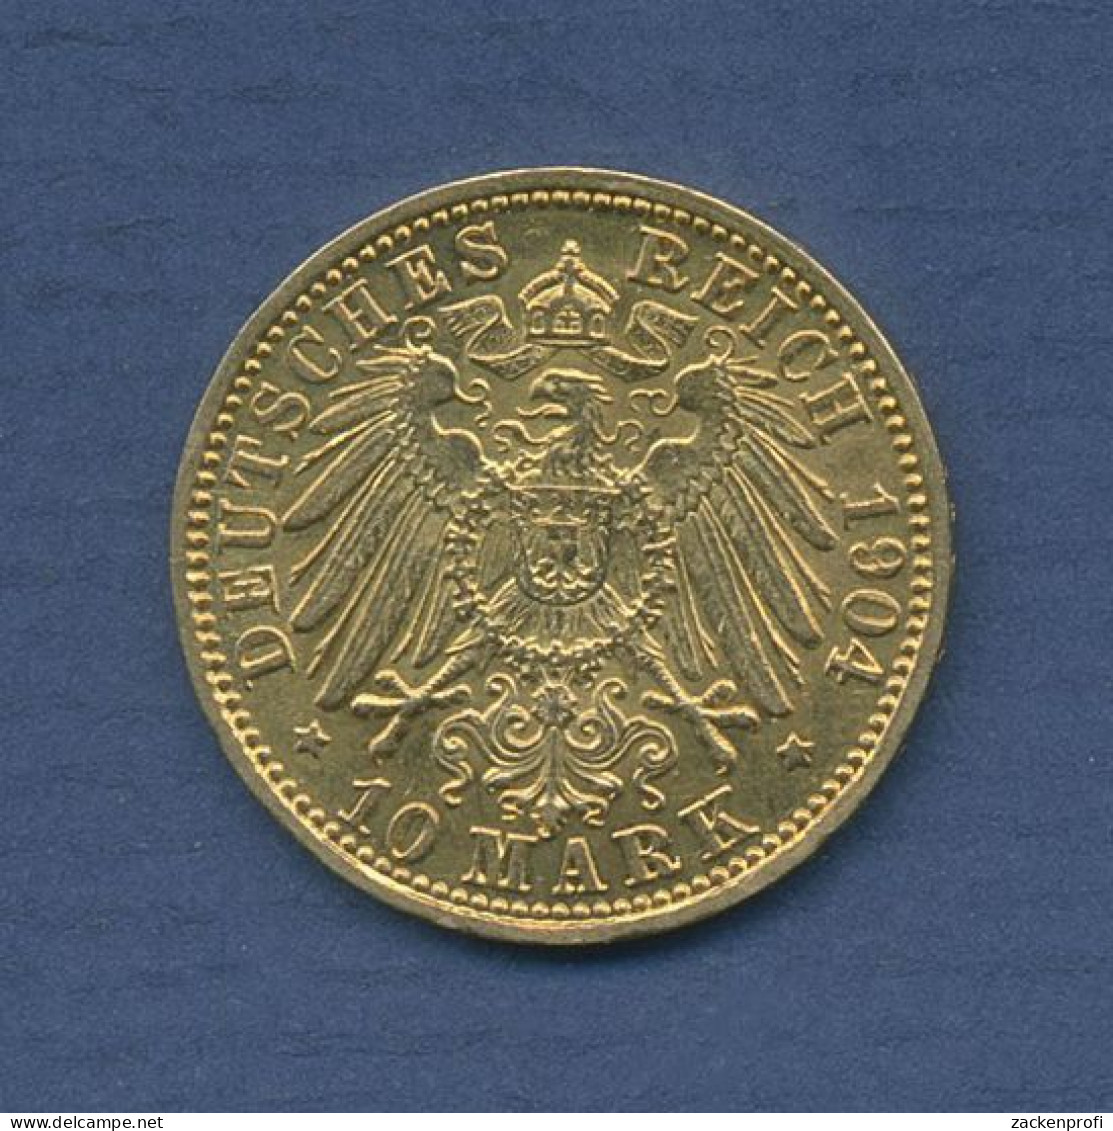 Baden 10 Mark Gold 1904 G, Großherzog Friedrich, J 190 Vz (m6436) - 5, 10 & 20 Mark Gold